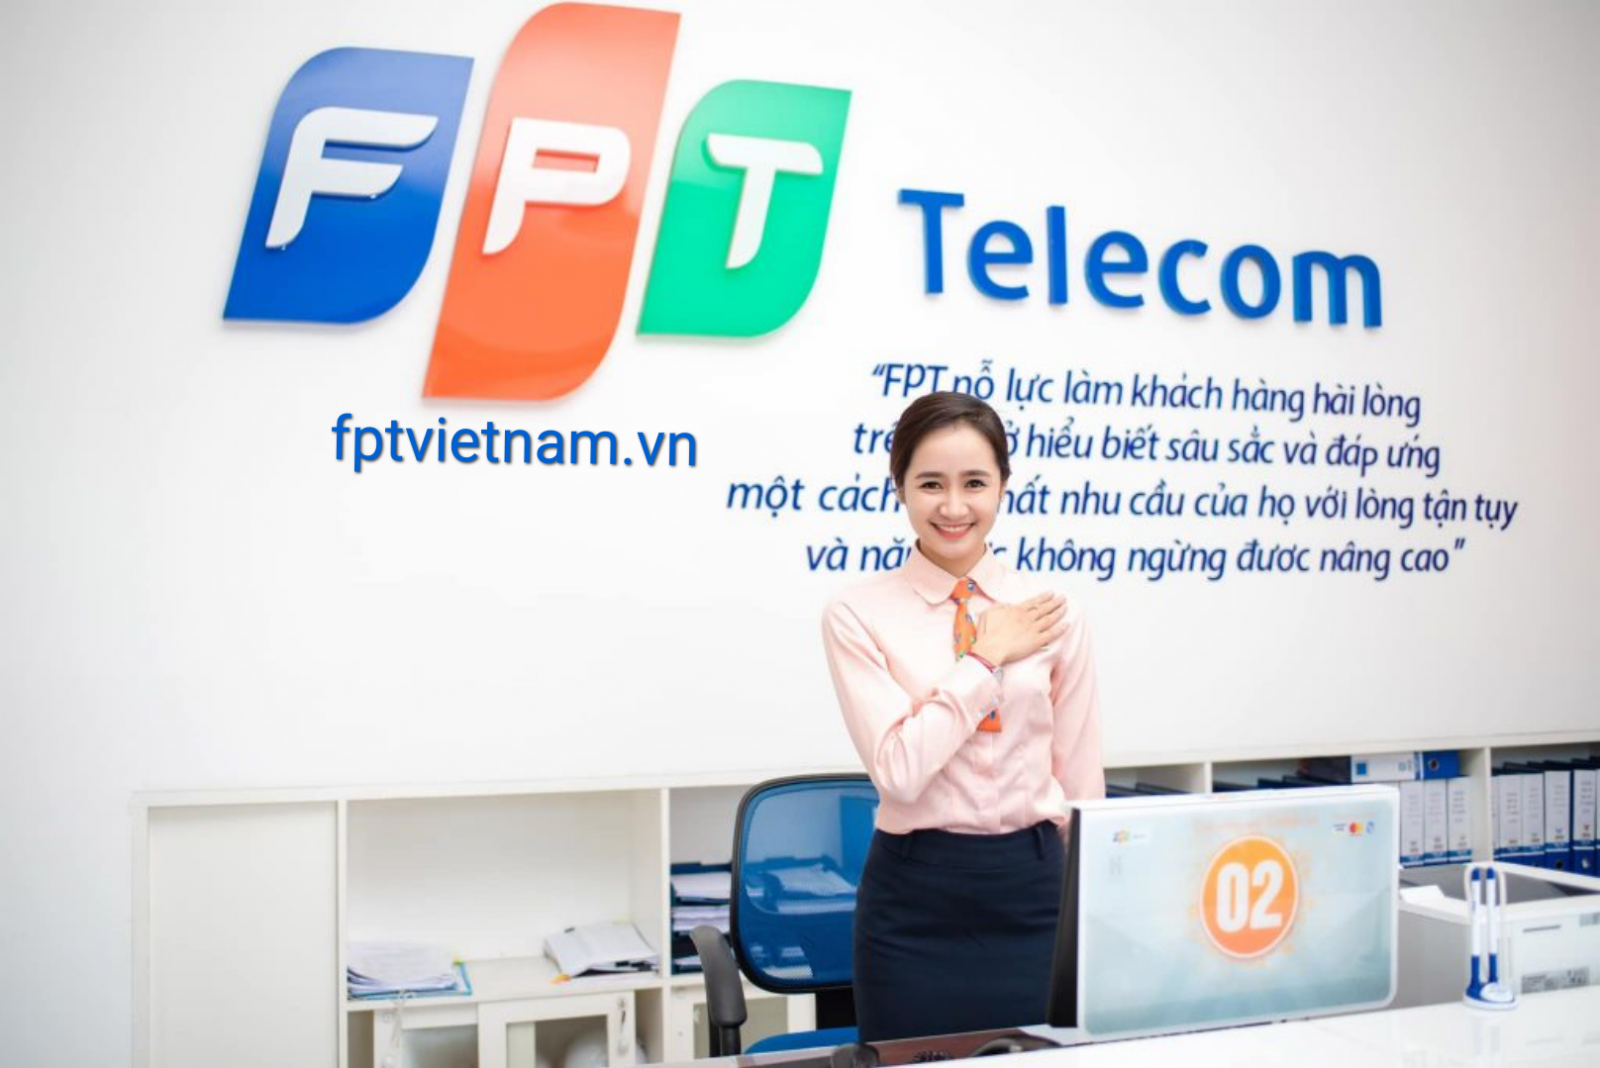 dịch vụ fpt telecom Đắk Lắk